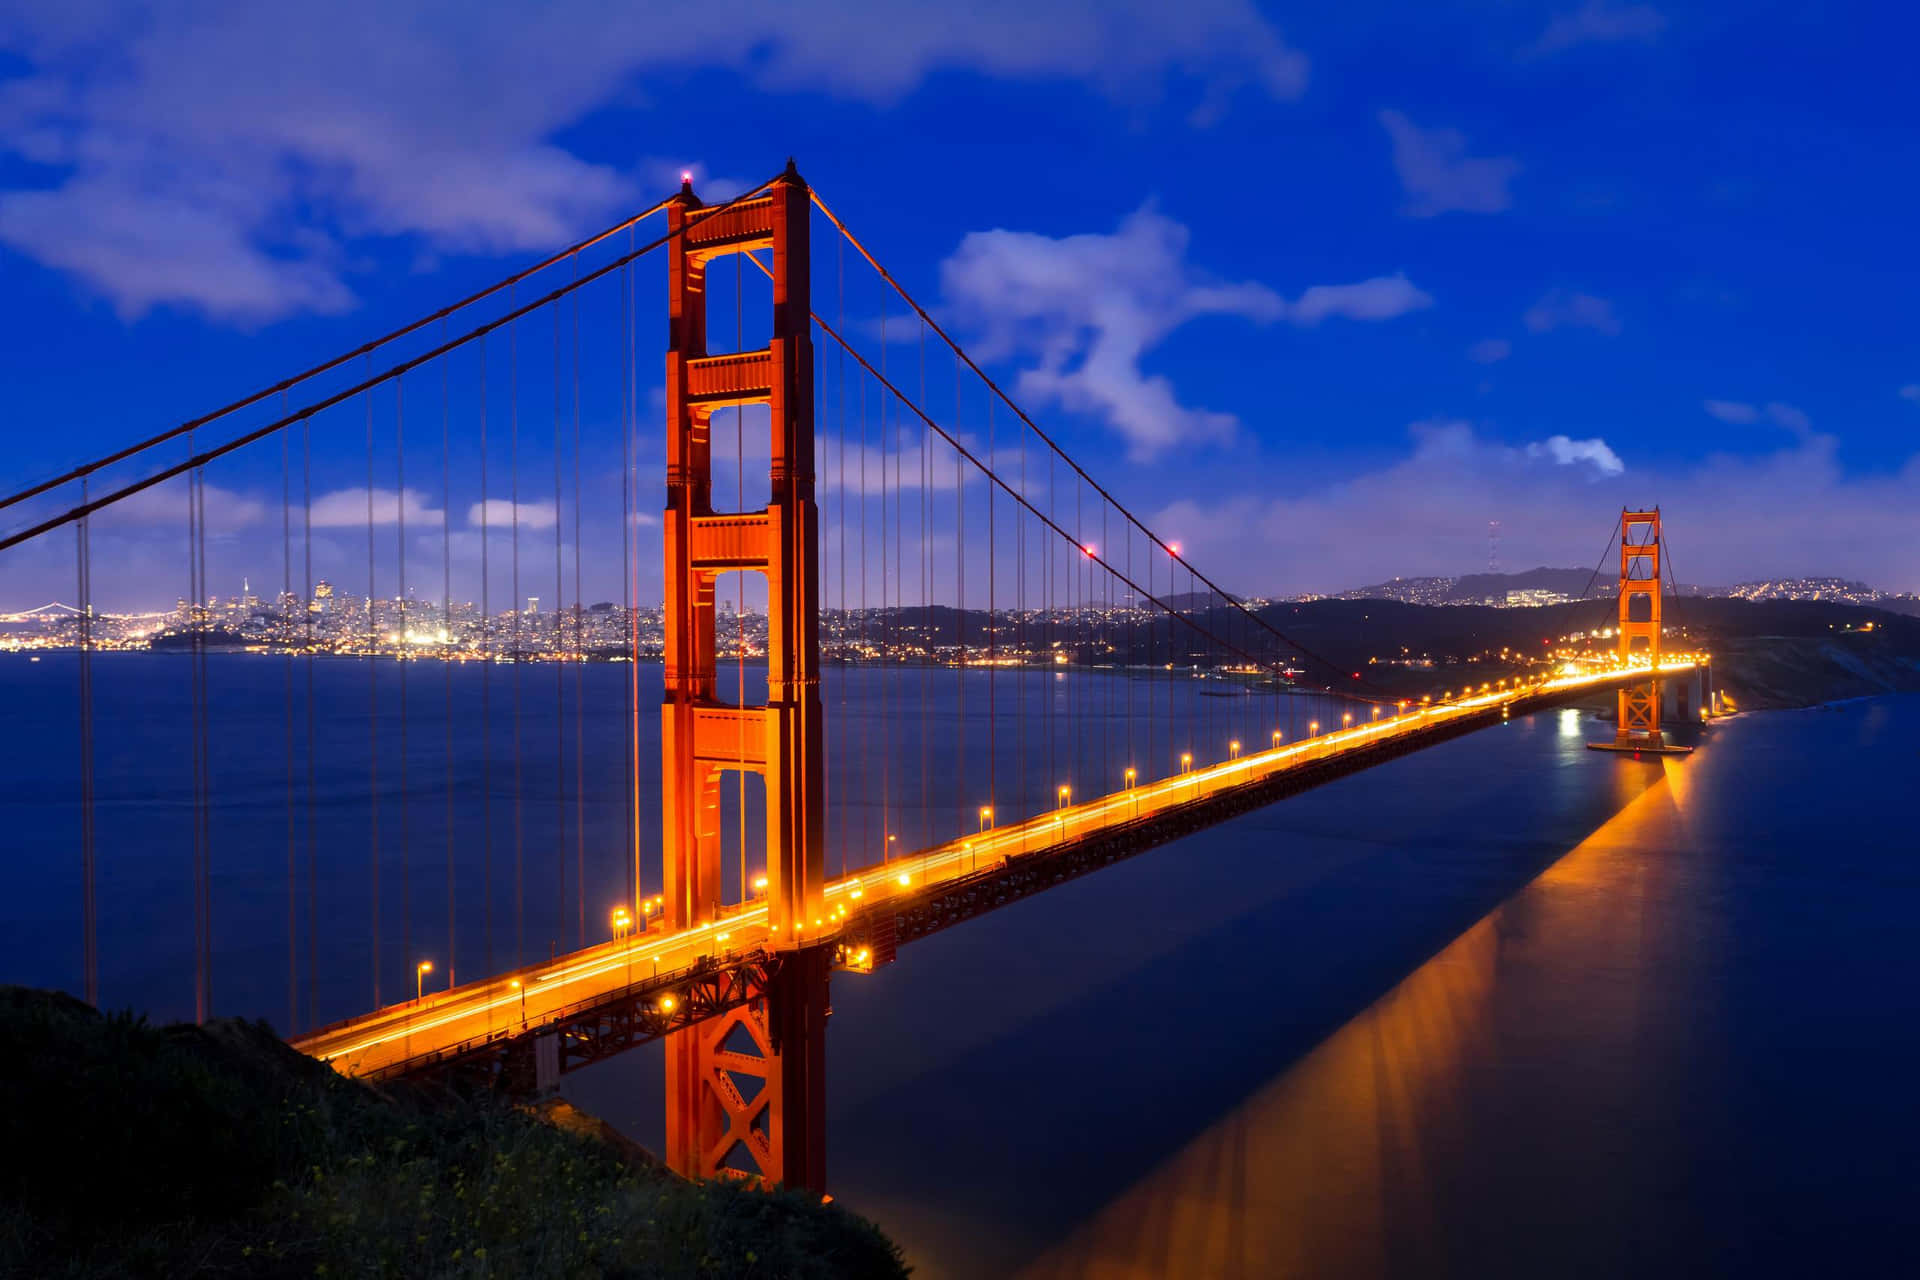 Goldenegate Bridge Lichter - Bester Hintergrund Für San Francisco.